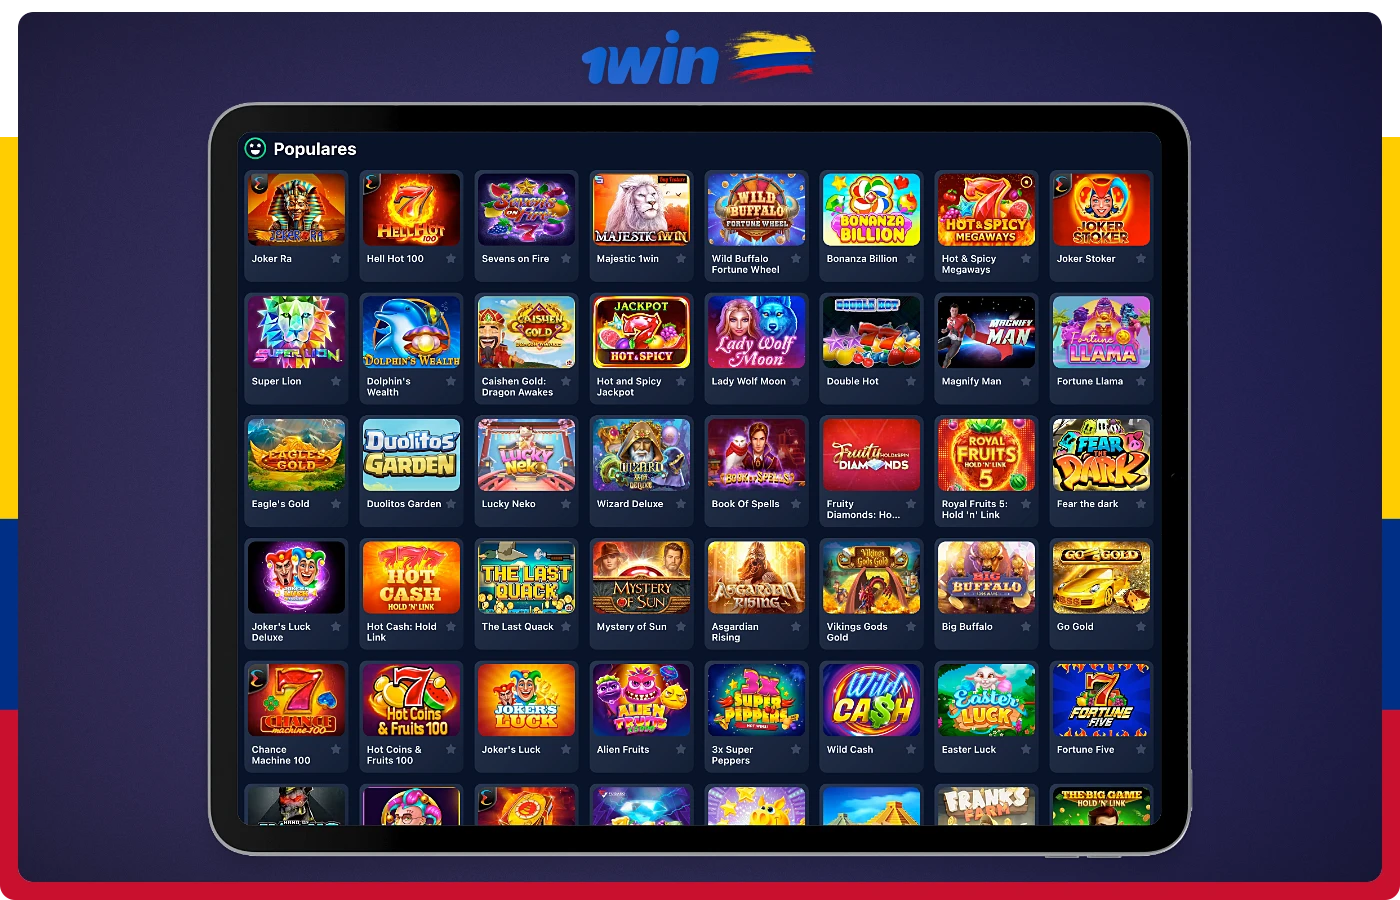 Los juegos más populares de 1win Casino incluyen juegos de una gran variedad de géneros